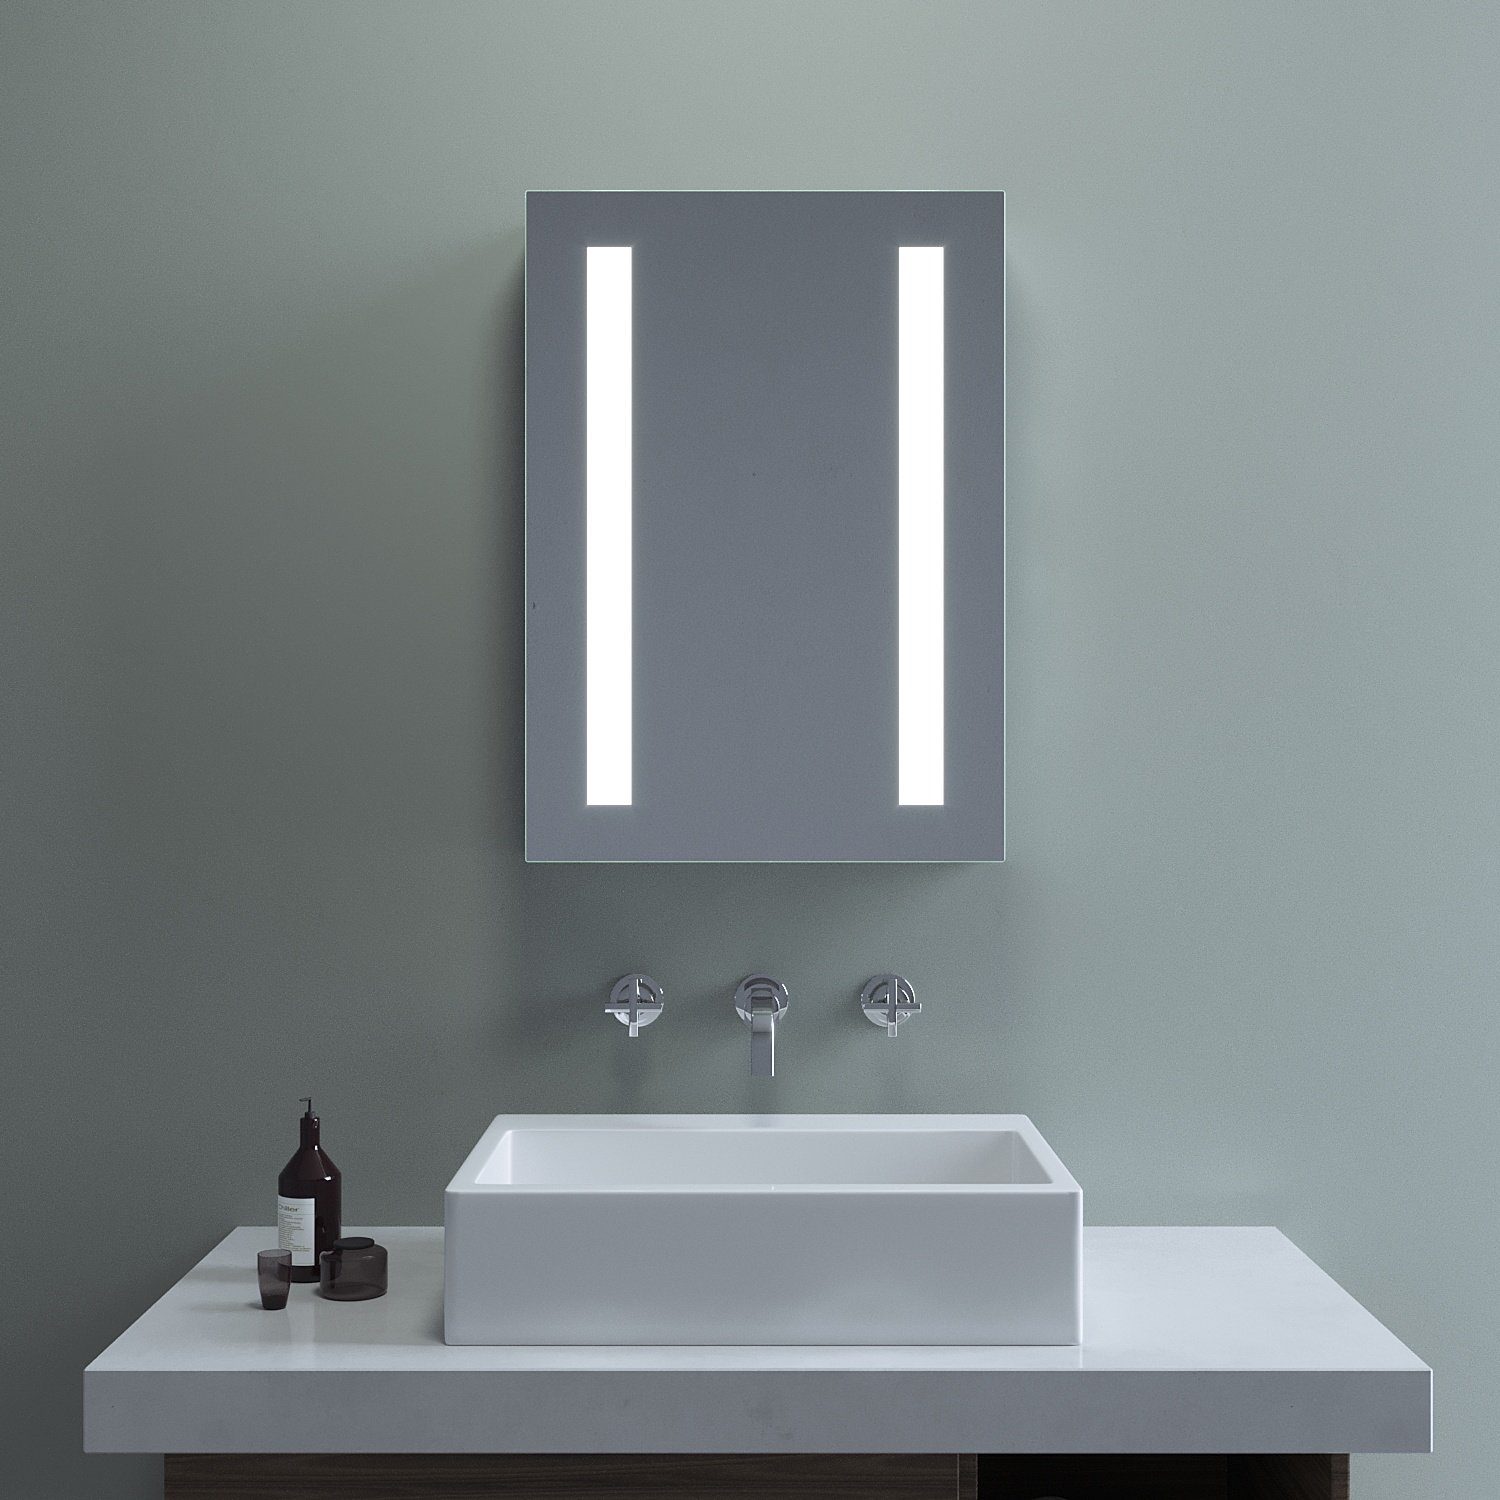 AQUABATOS Spiegelschrank Spiegelschrank Bad mit Beleuchtung Badezimmerschrank Badspiegel 2 Glaseinlegeböden, Beschlagfrei, IR-Sensor, Dimmbar, Memory-Funktion, IP44